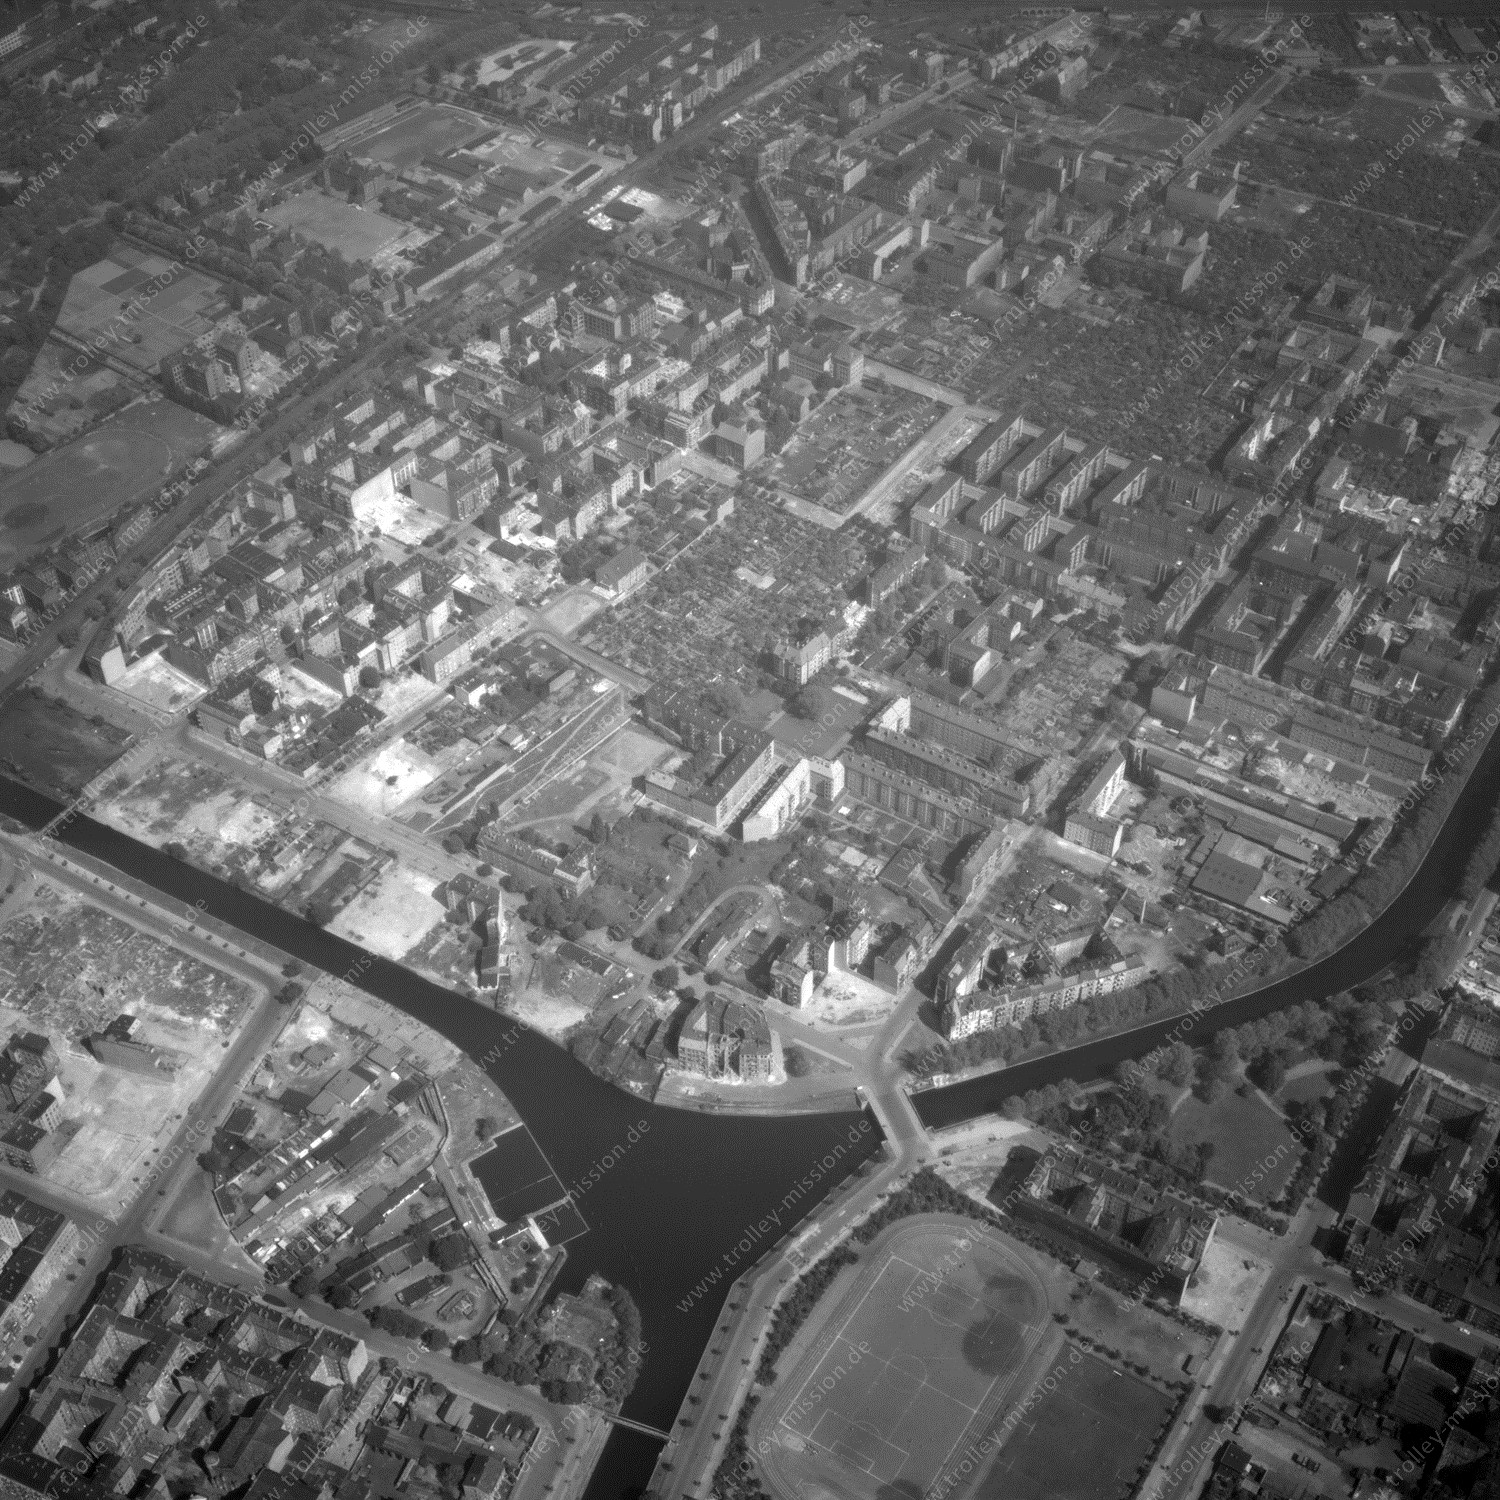 Alte Fotos und Luftbilder von Berlin - Luftbildaufnahme Nr. 02 - Historische Luftaufnahmen von West-Berlin aus dem Jahr 1954 - Flugstrecke November